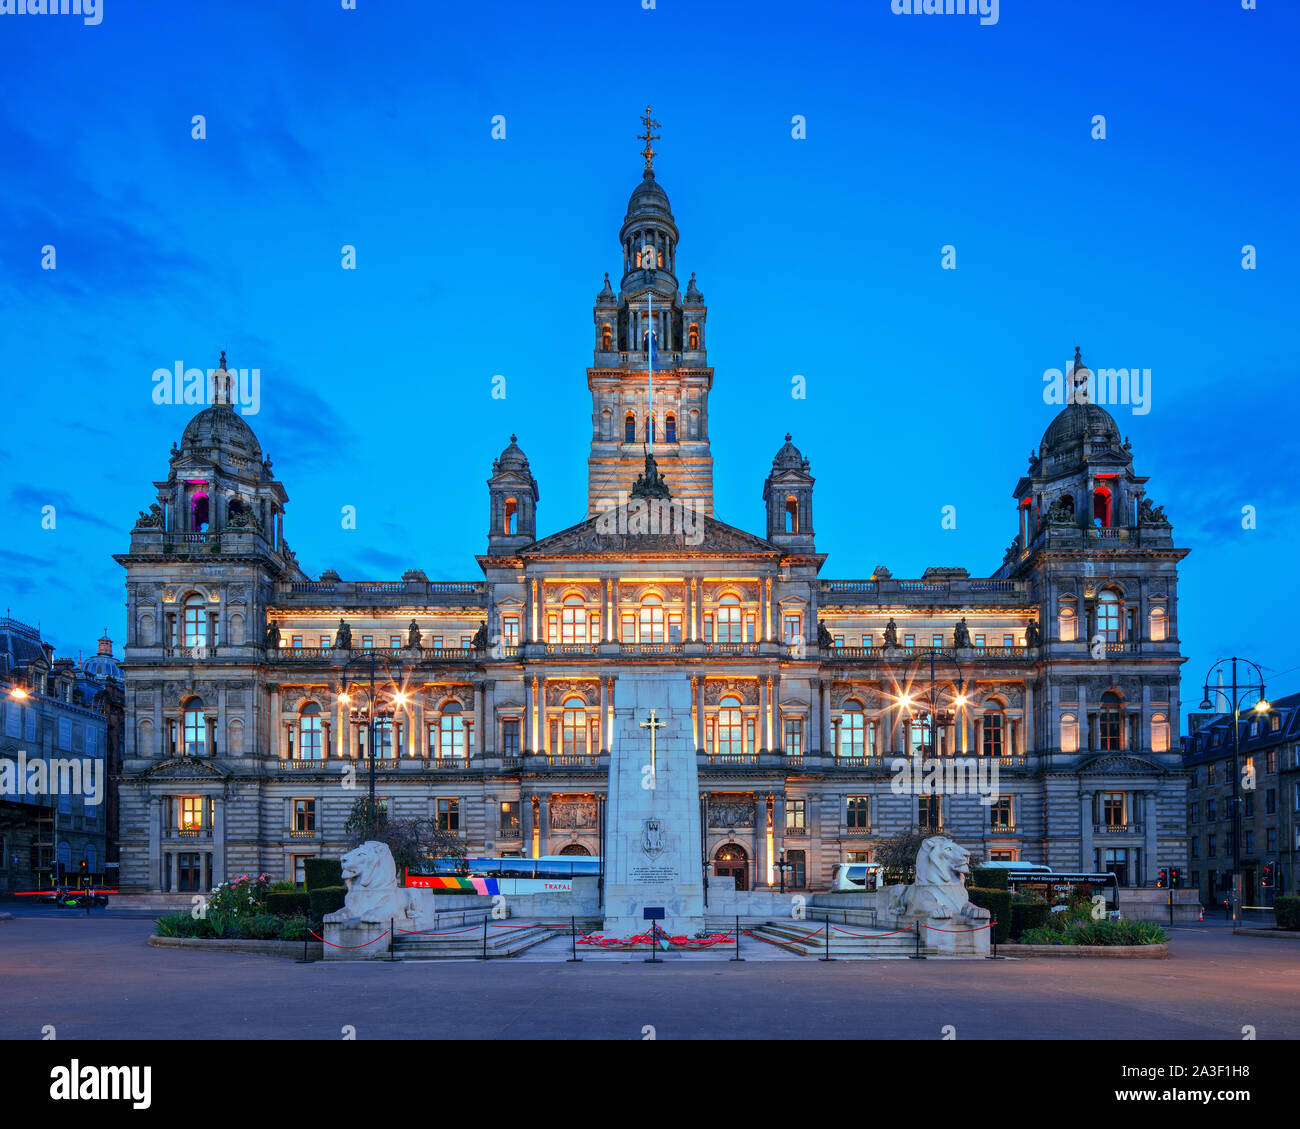 Город глазго страна. Глазго город в Шотландии. Glasgow в Шотландии. Здание городского совета Глазго. Глазго Шотландия достопримечательности.